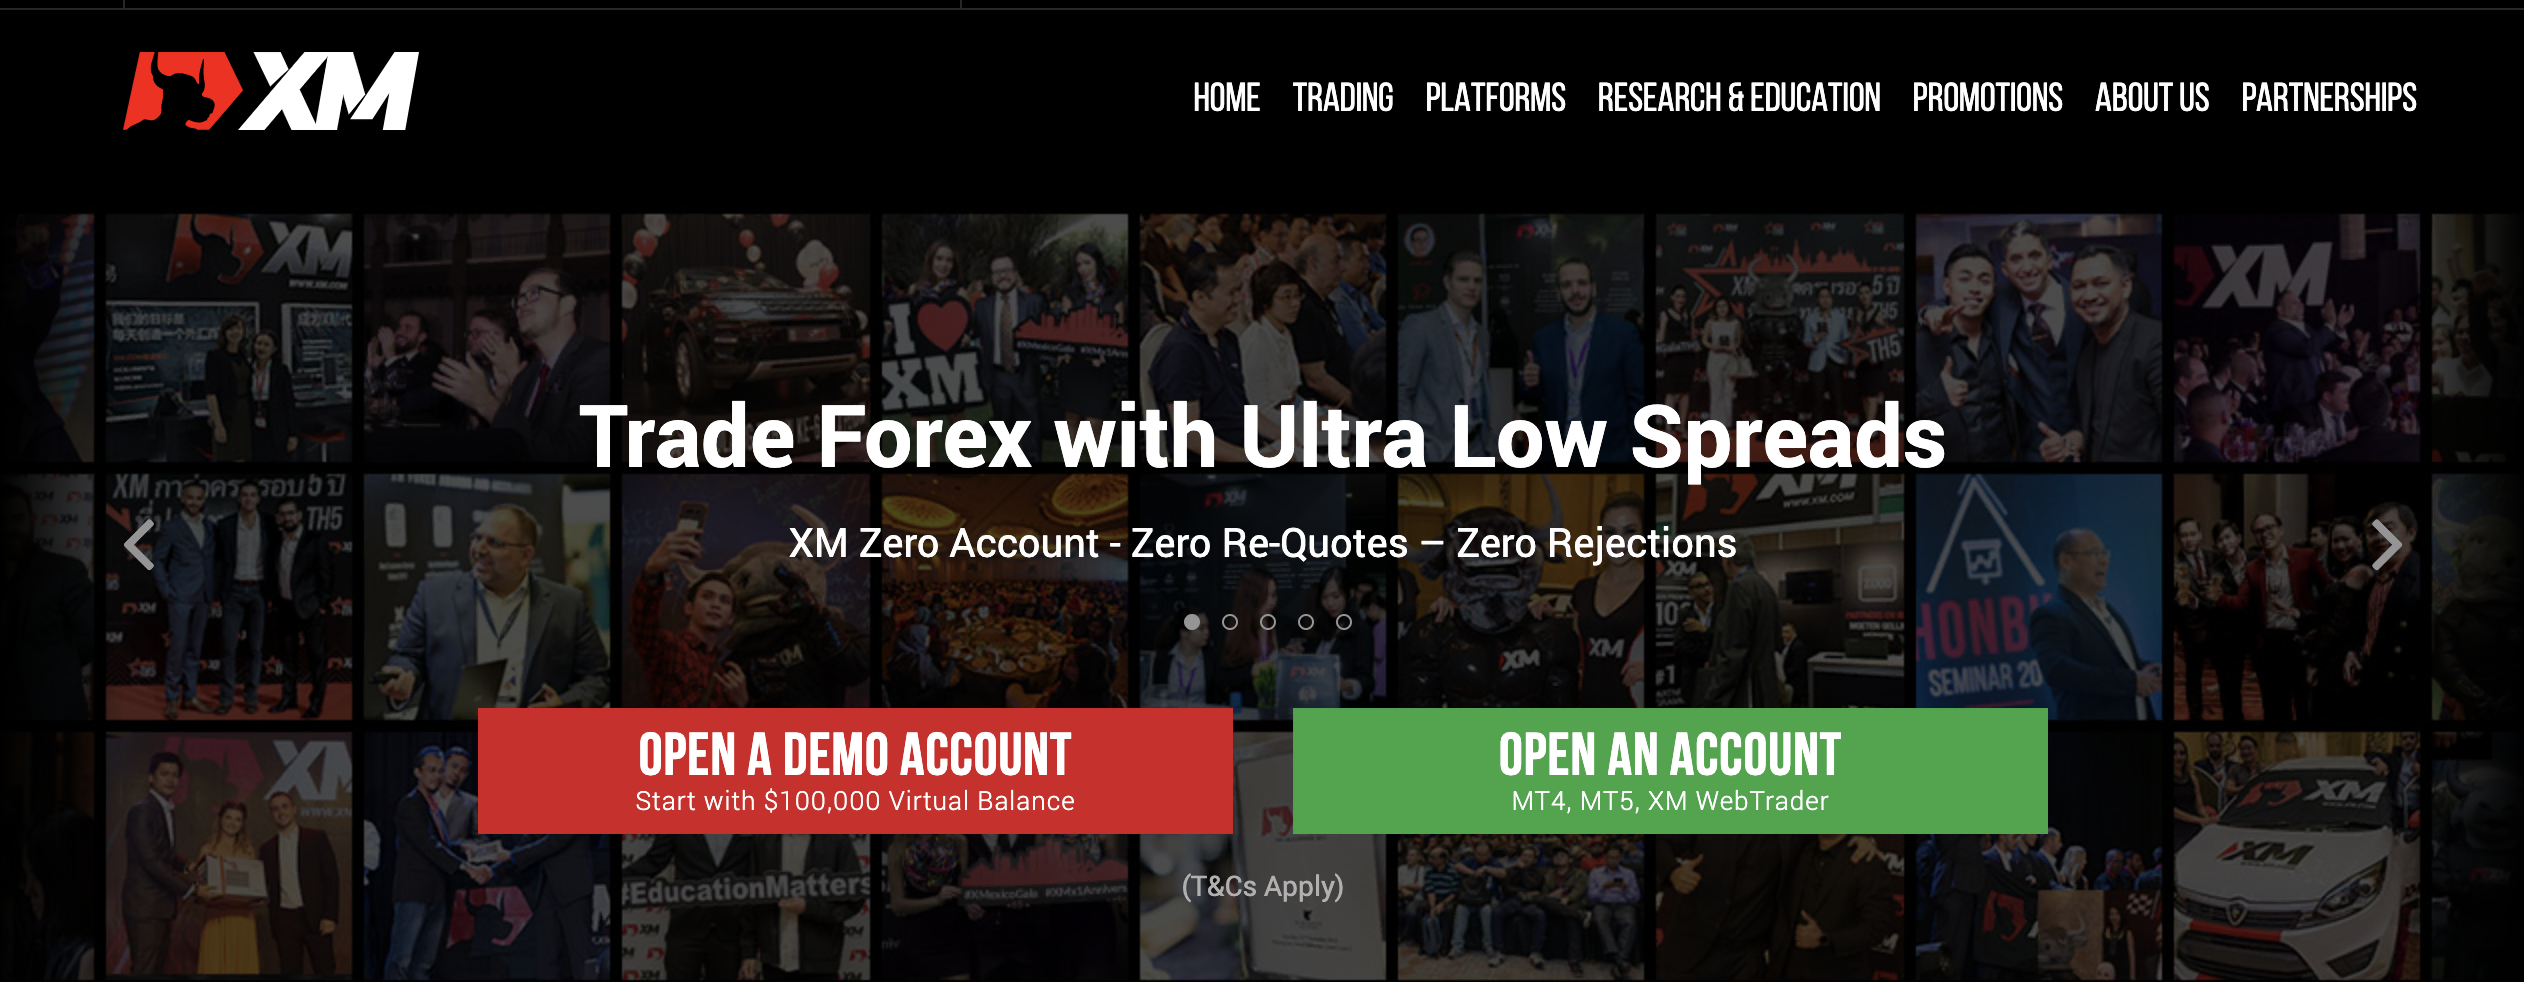 El sitio web oficial del corredor de divisas XM